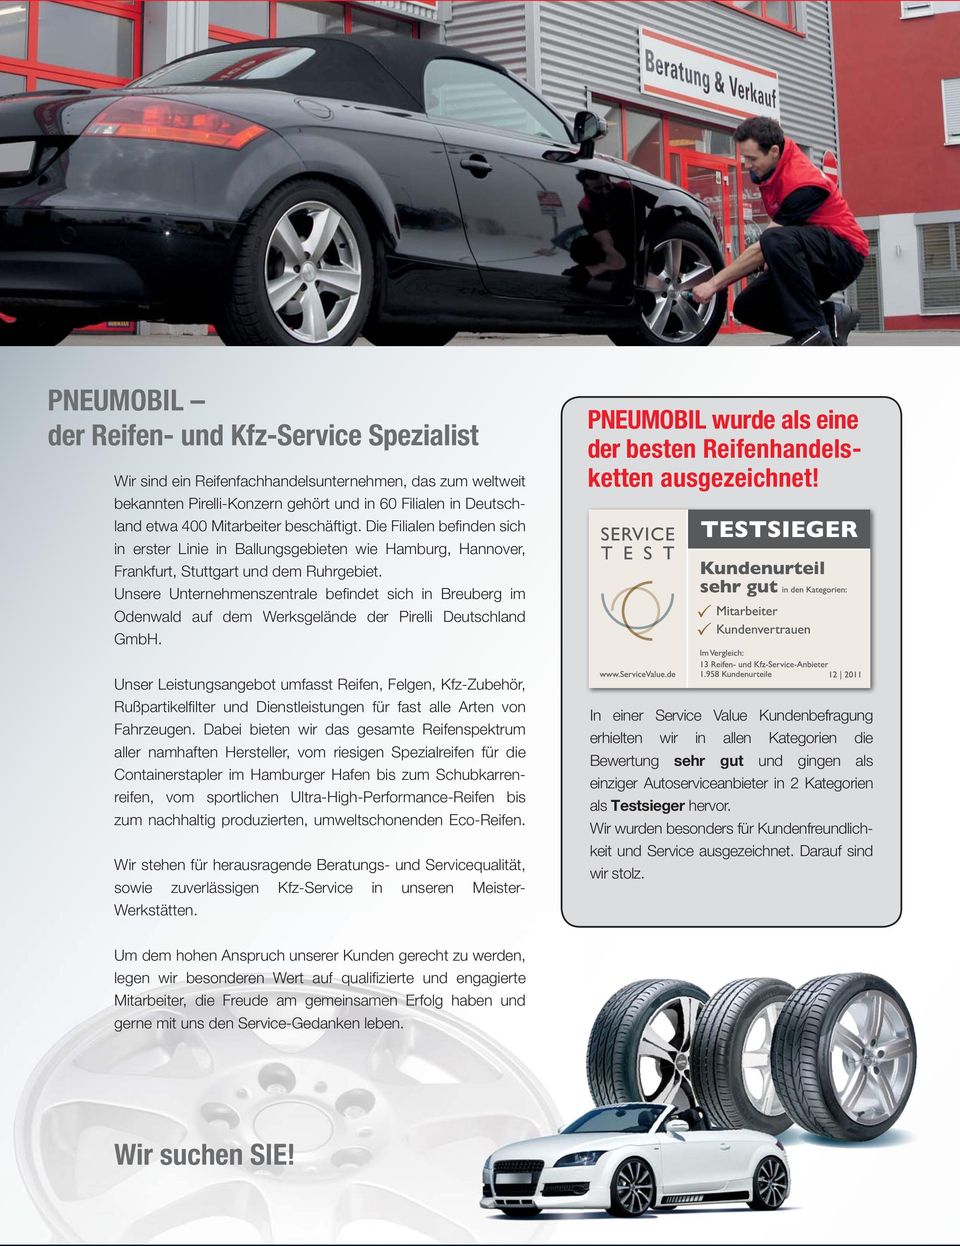 Unsere Unternehmenszentrale befi ndet sich in Breuberg im Odenwald auf dem Werksgelände der Pirelli Deutschland GmbH. PNEUMOBIL wurde als eine der besten Reifenhandelsketten ausgezeichnet!